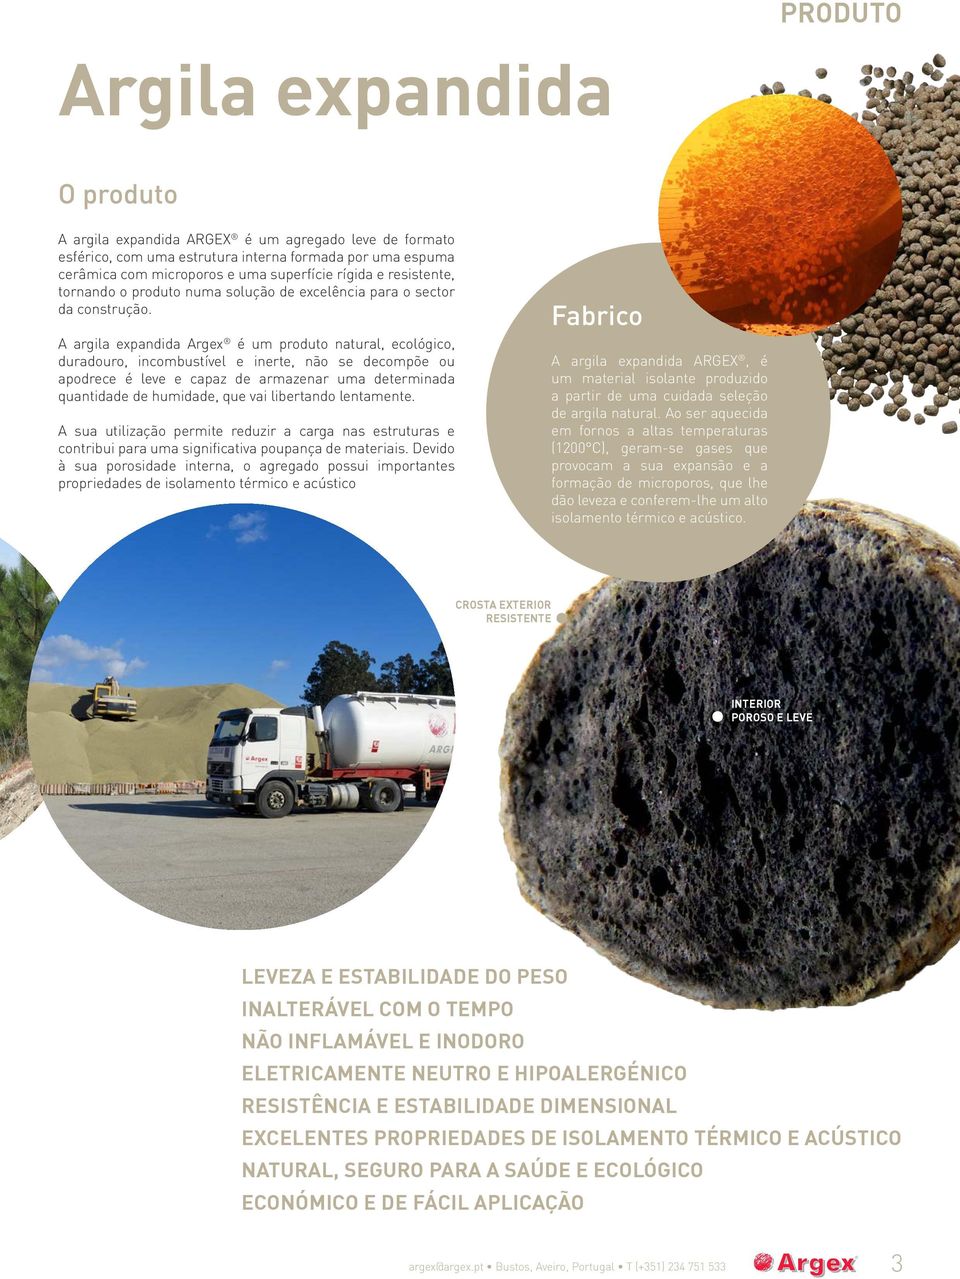 A argila expandida Argex é um produto natural, ecológico, duradouro, incombustível e inerte, não se decompõe ou apodrece é leve e capaz de armazenar uma determinada quantidade de humidade, que vai